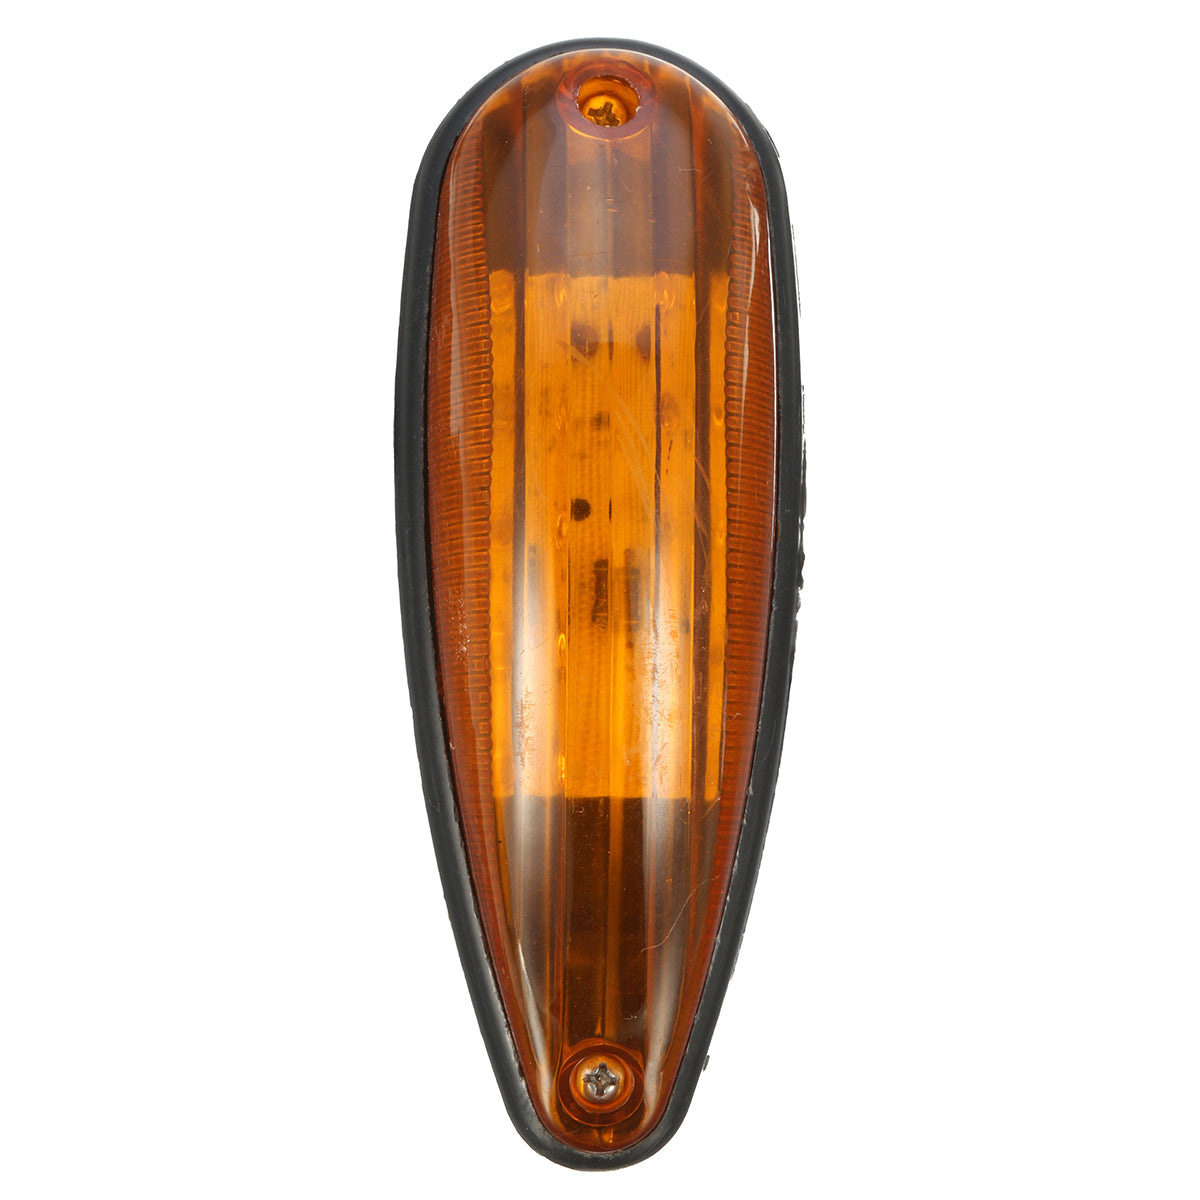 Dark Orange 6 Inches 10 LED Car Tail Light Side Marker Lamp for Truck Tailer